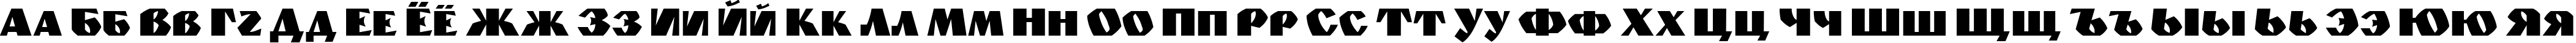 Пример написания русского алфавита шрифтом Monolyt_Diai